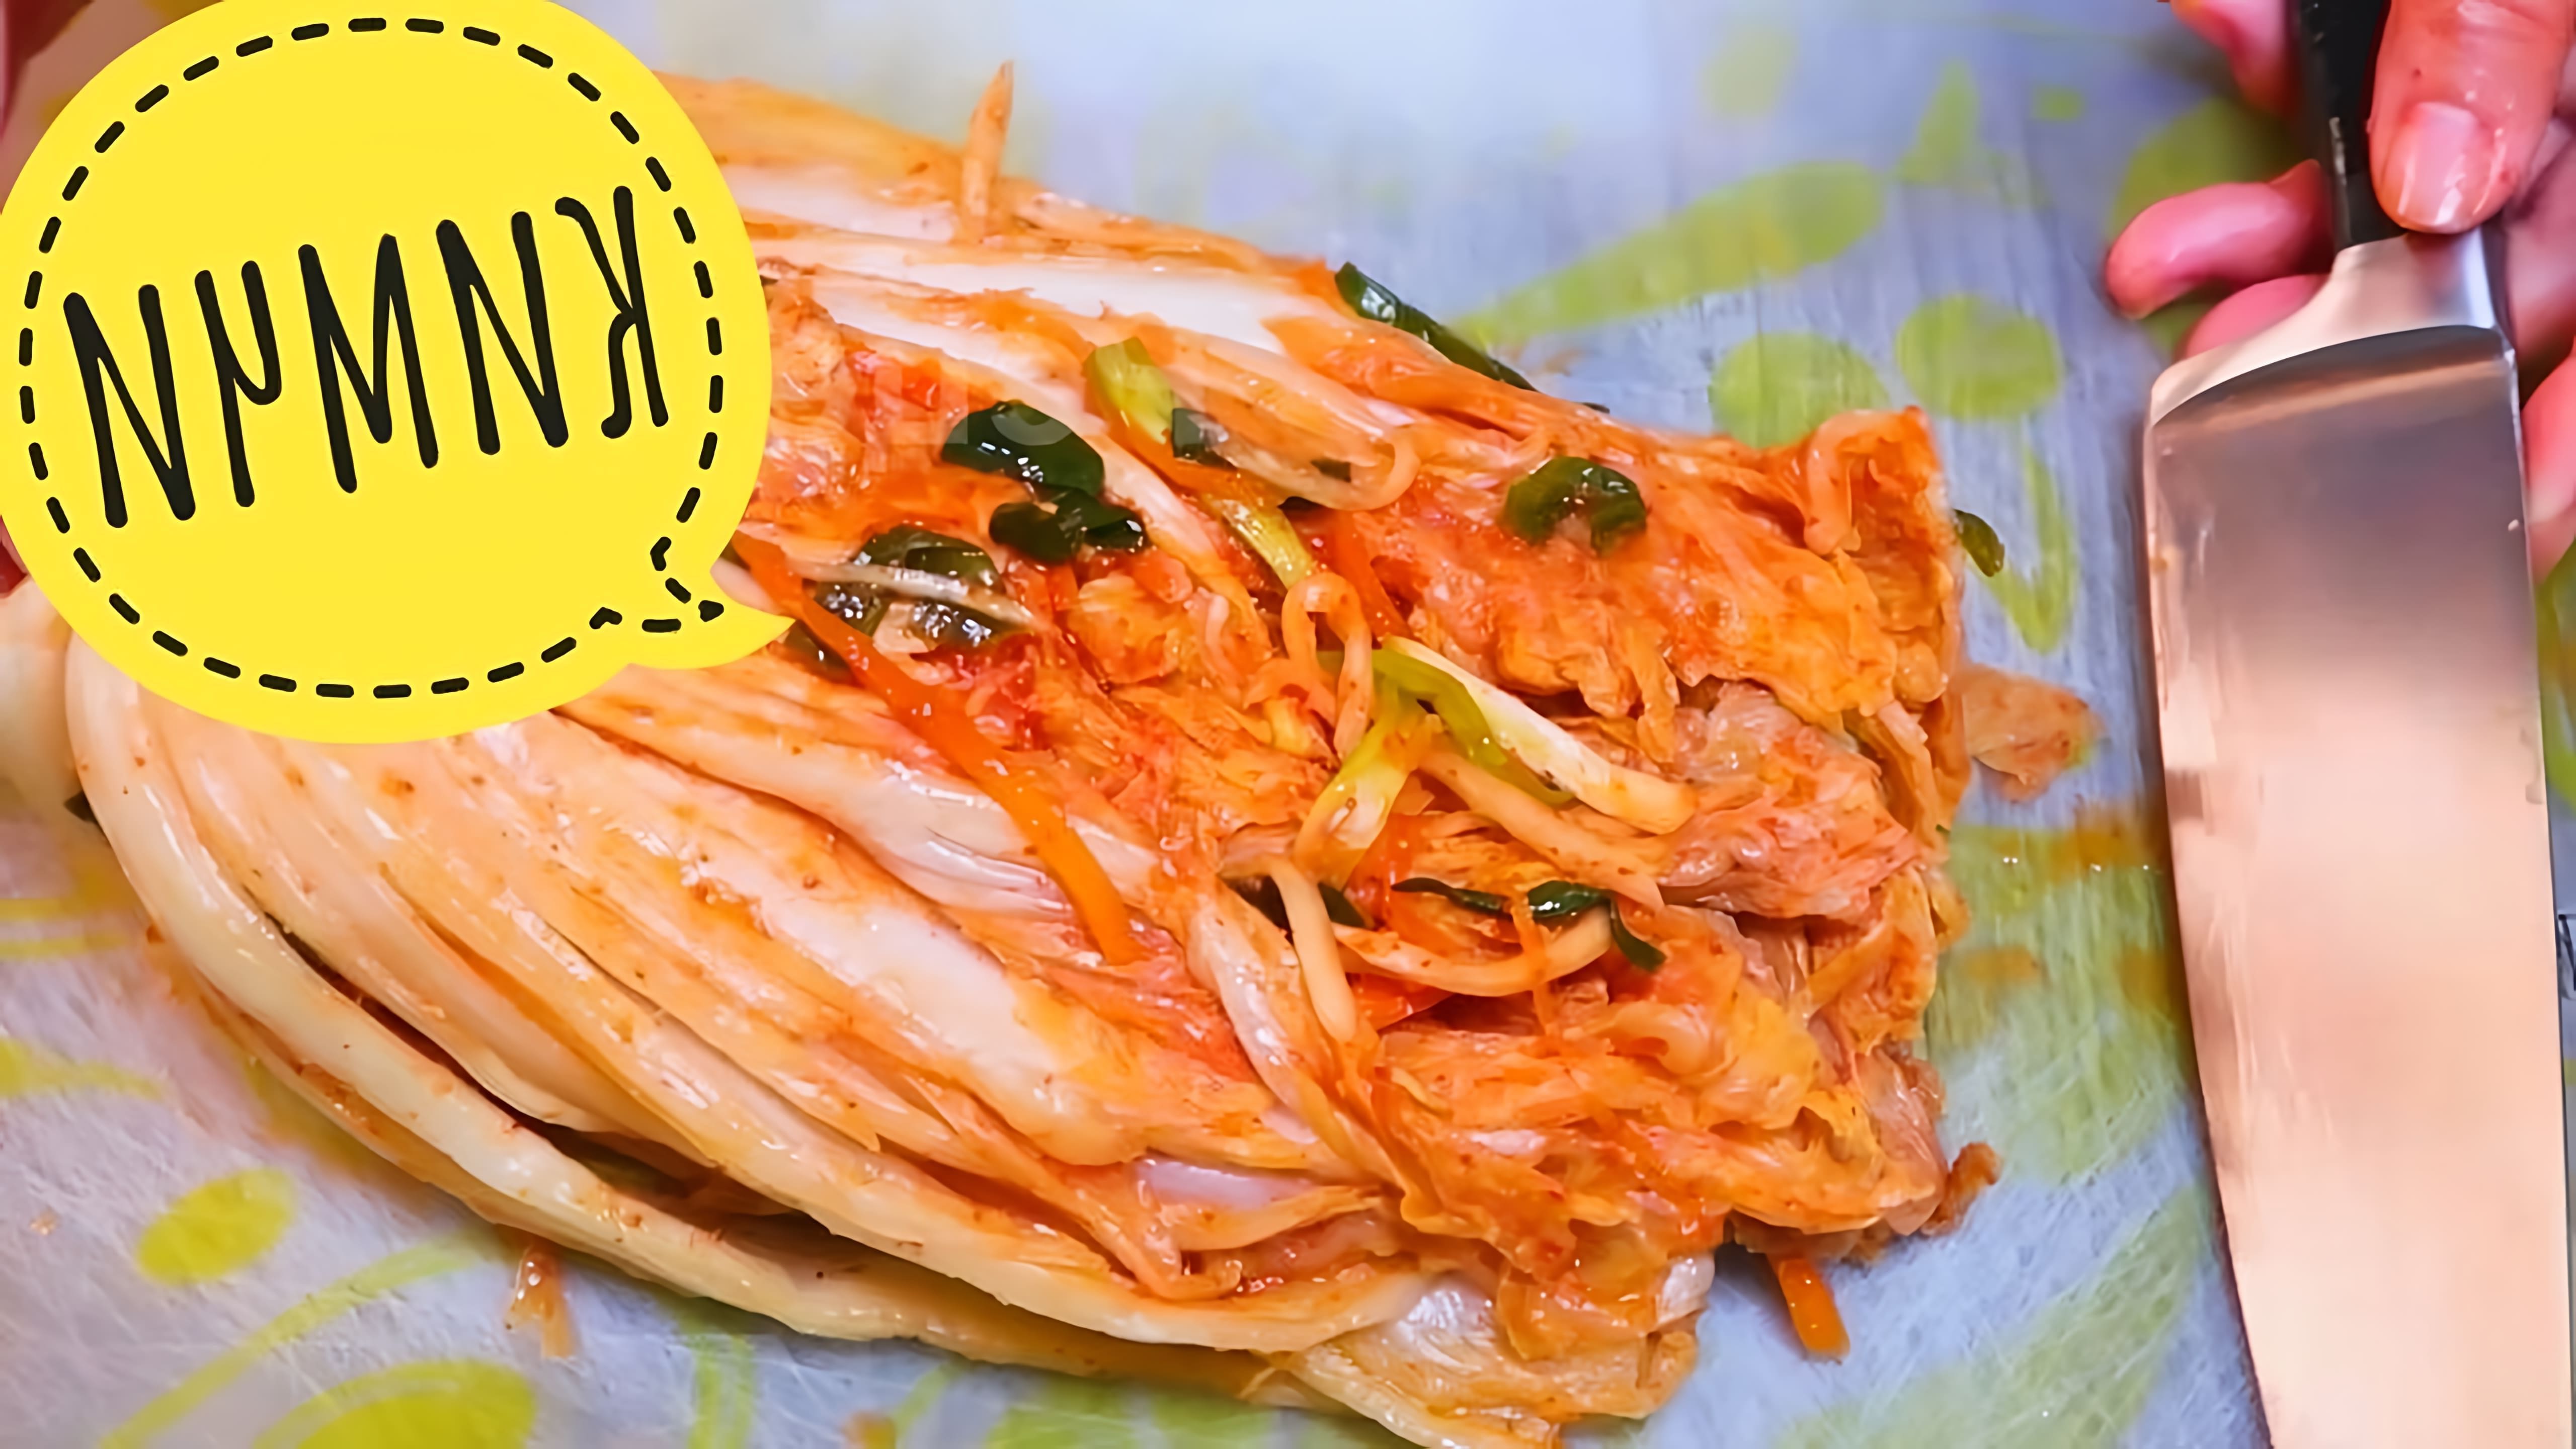 В данном видео демонстрируется процесс приготовления традиционного корейского блюда кимчи из пекинской капусты